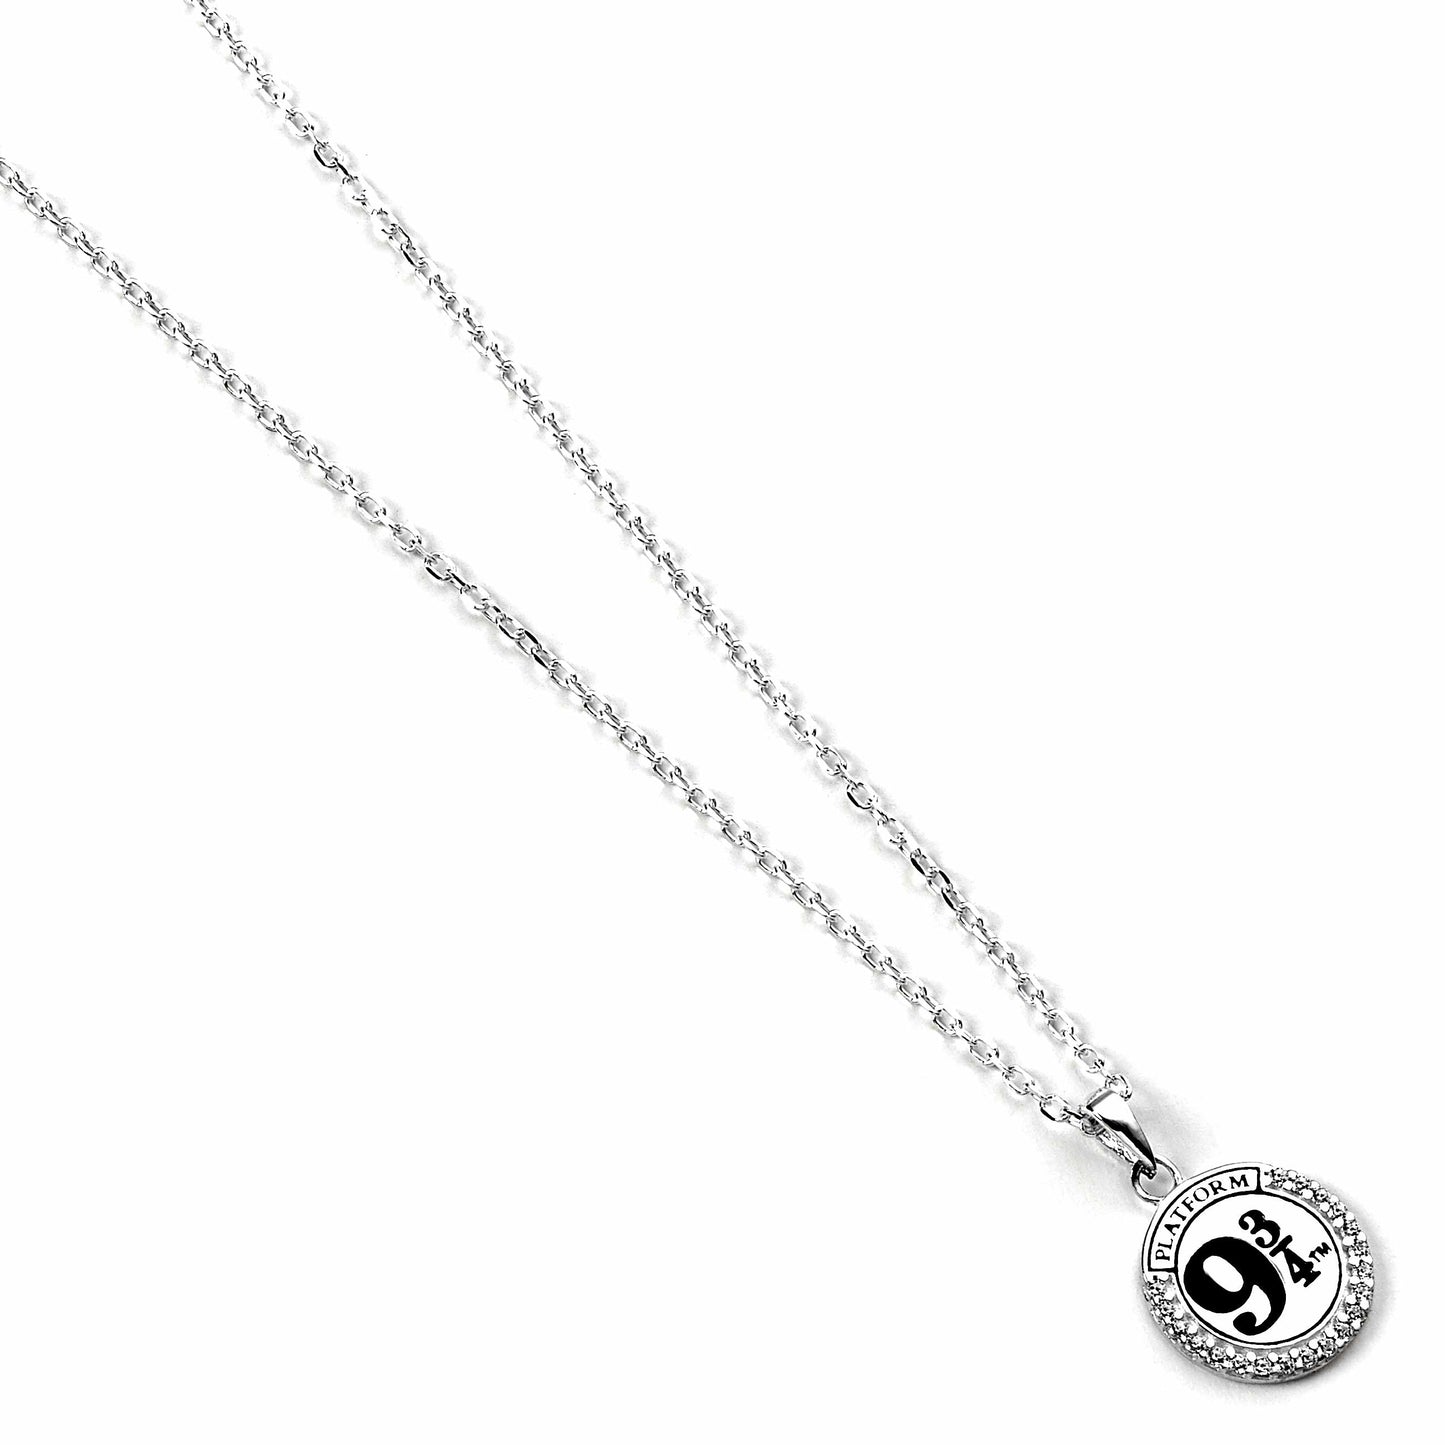 Harry Potter Platform 9 3/4 Necklace Embellished with Crystals - Sterling Silver